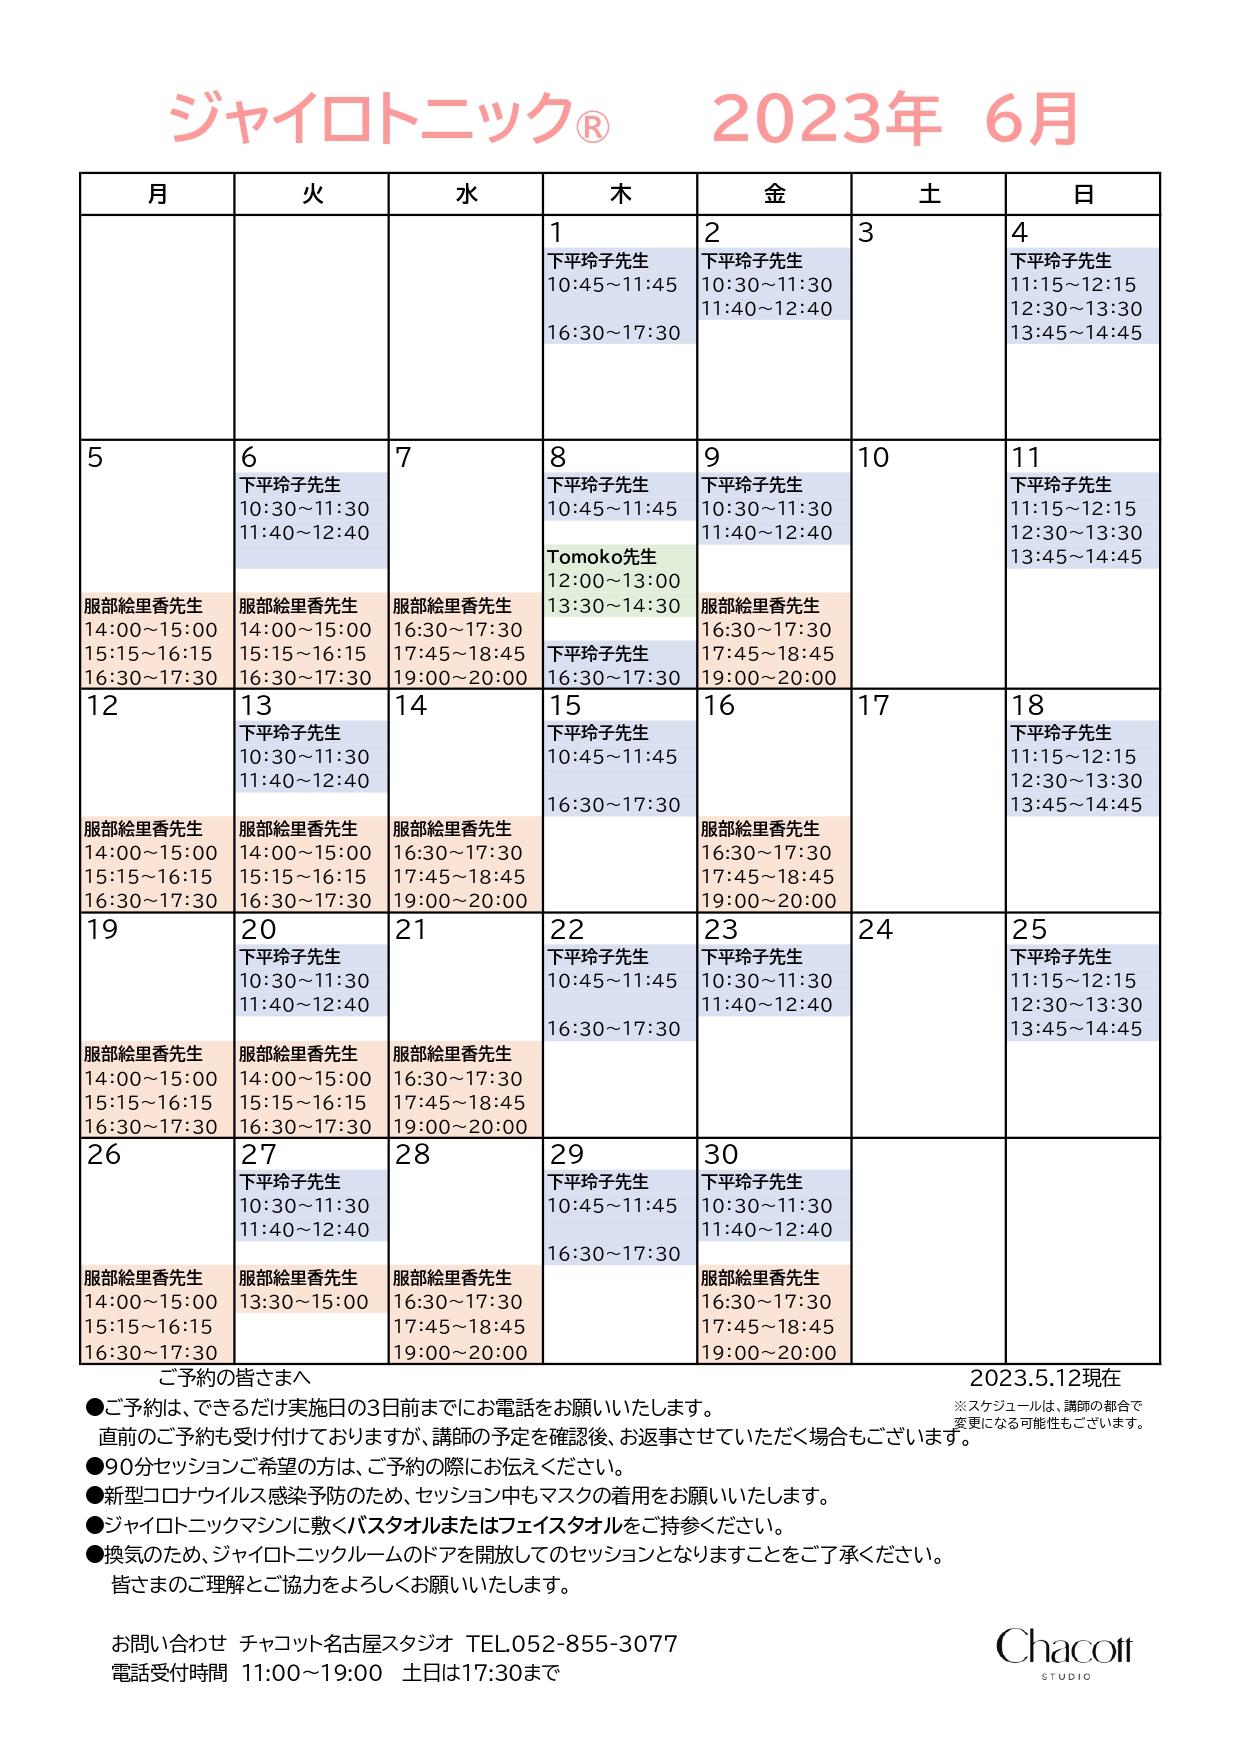 202306_nagoya_gyro_timetable.jpg